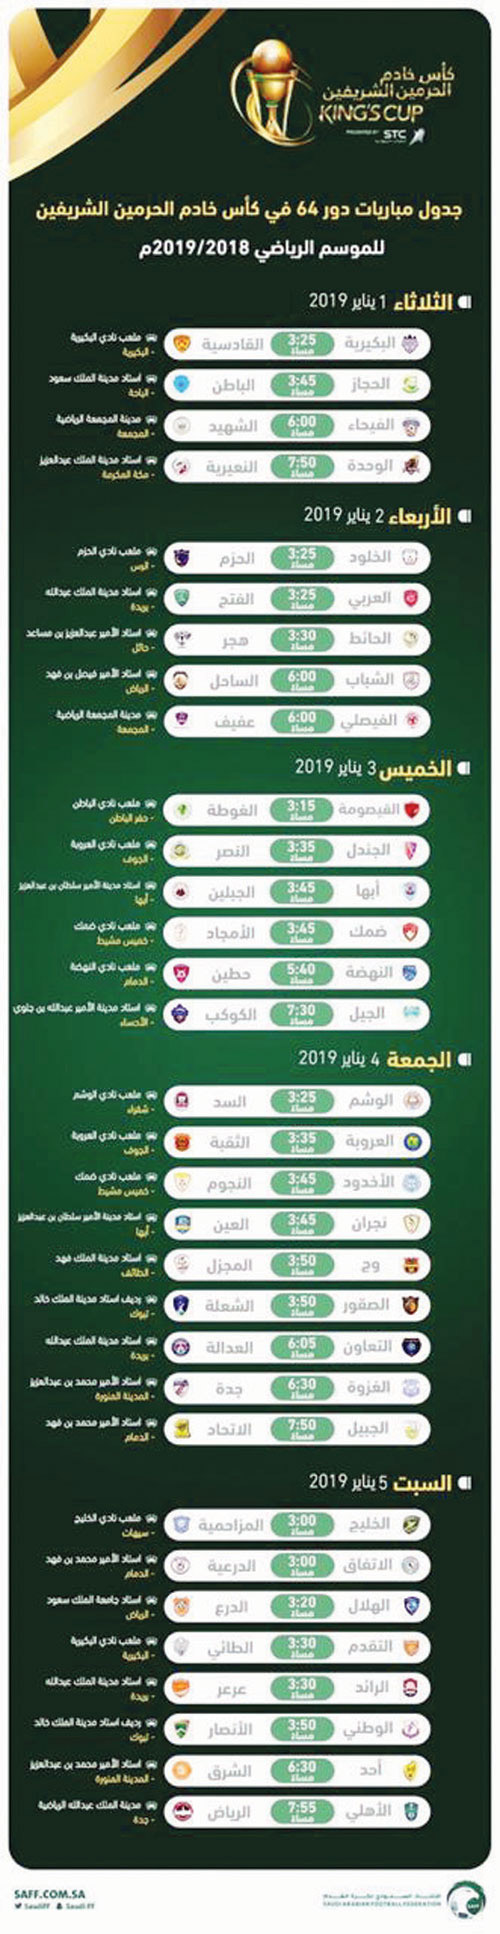 جدول مباريات دور 64 في كأس خادم الحرمين الشريفين 